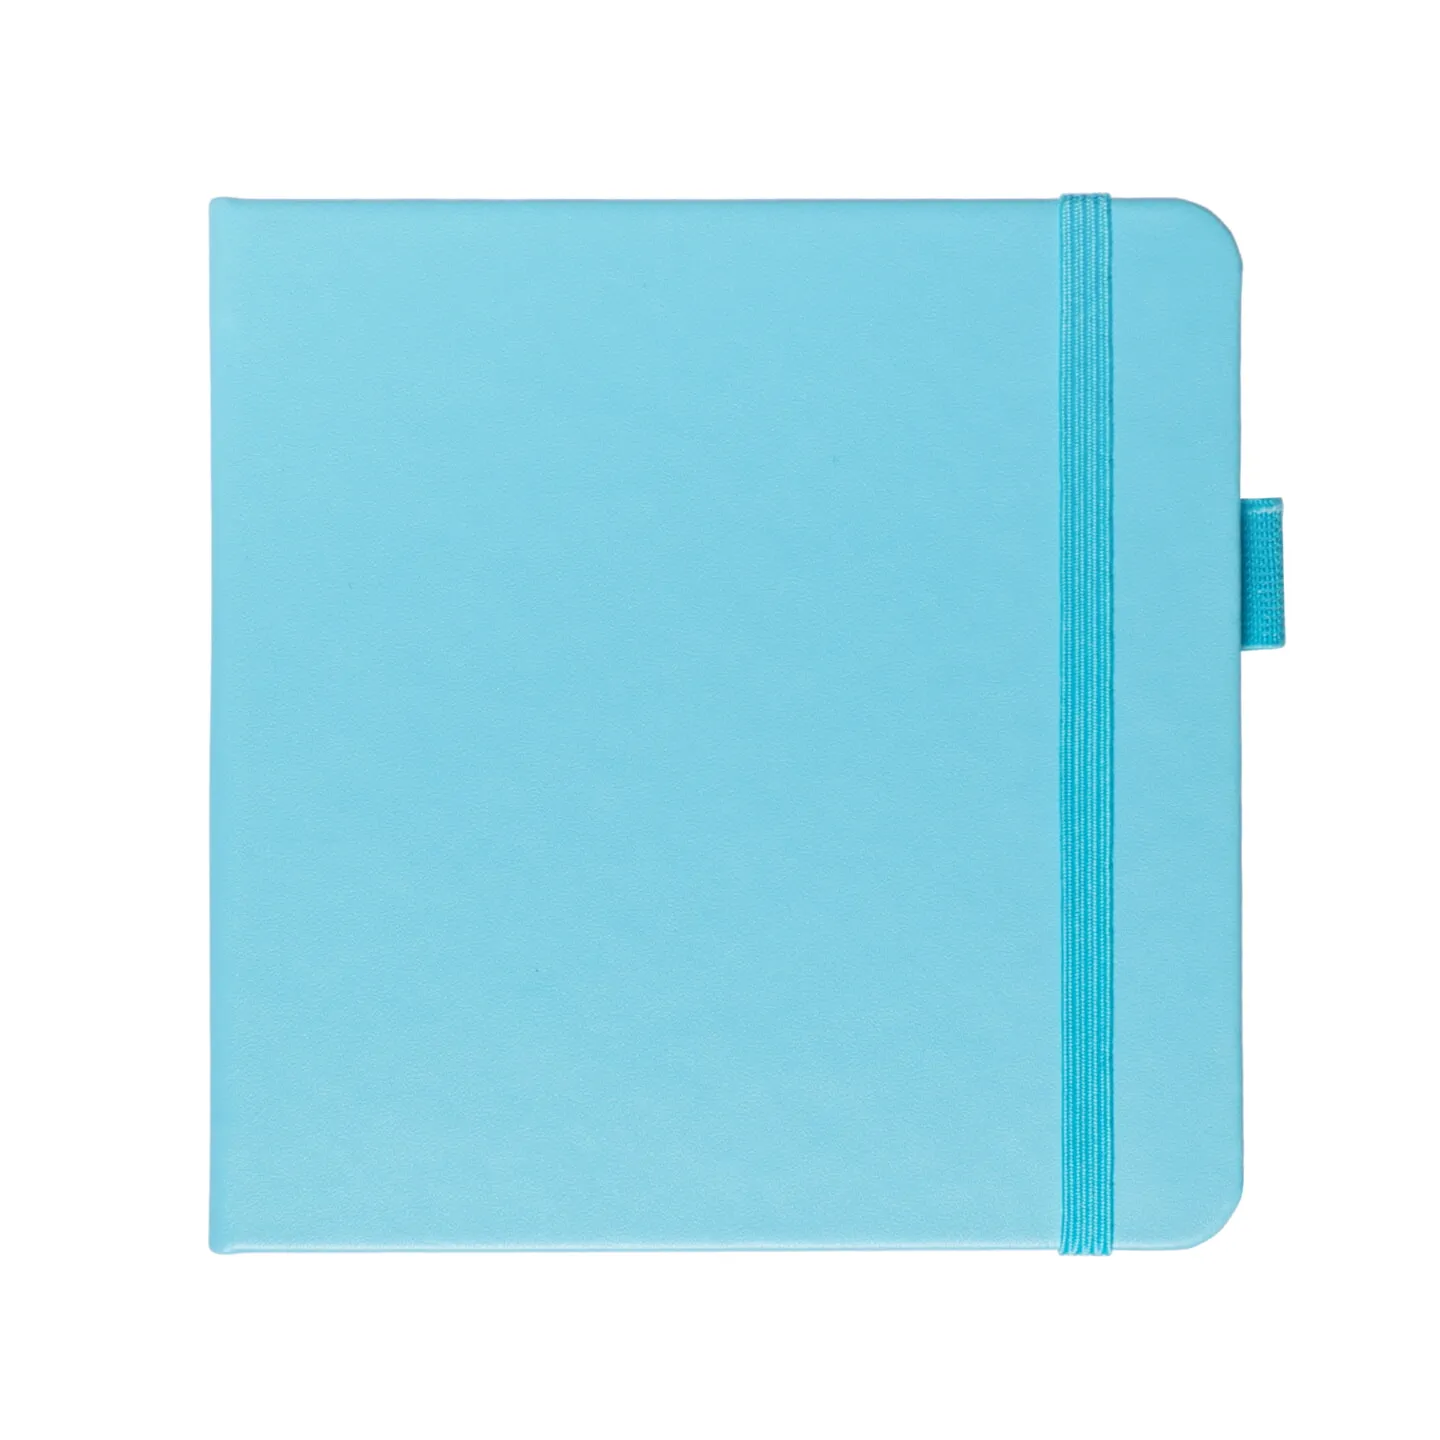 Блокнот для зарисовок Sketchmarker 140г/кв.м 12*12см 80л (Небесно-голубой)